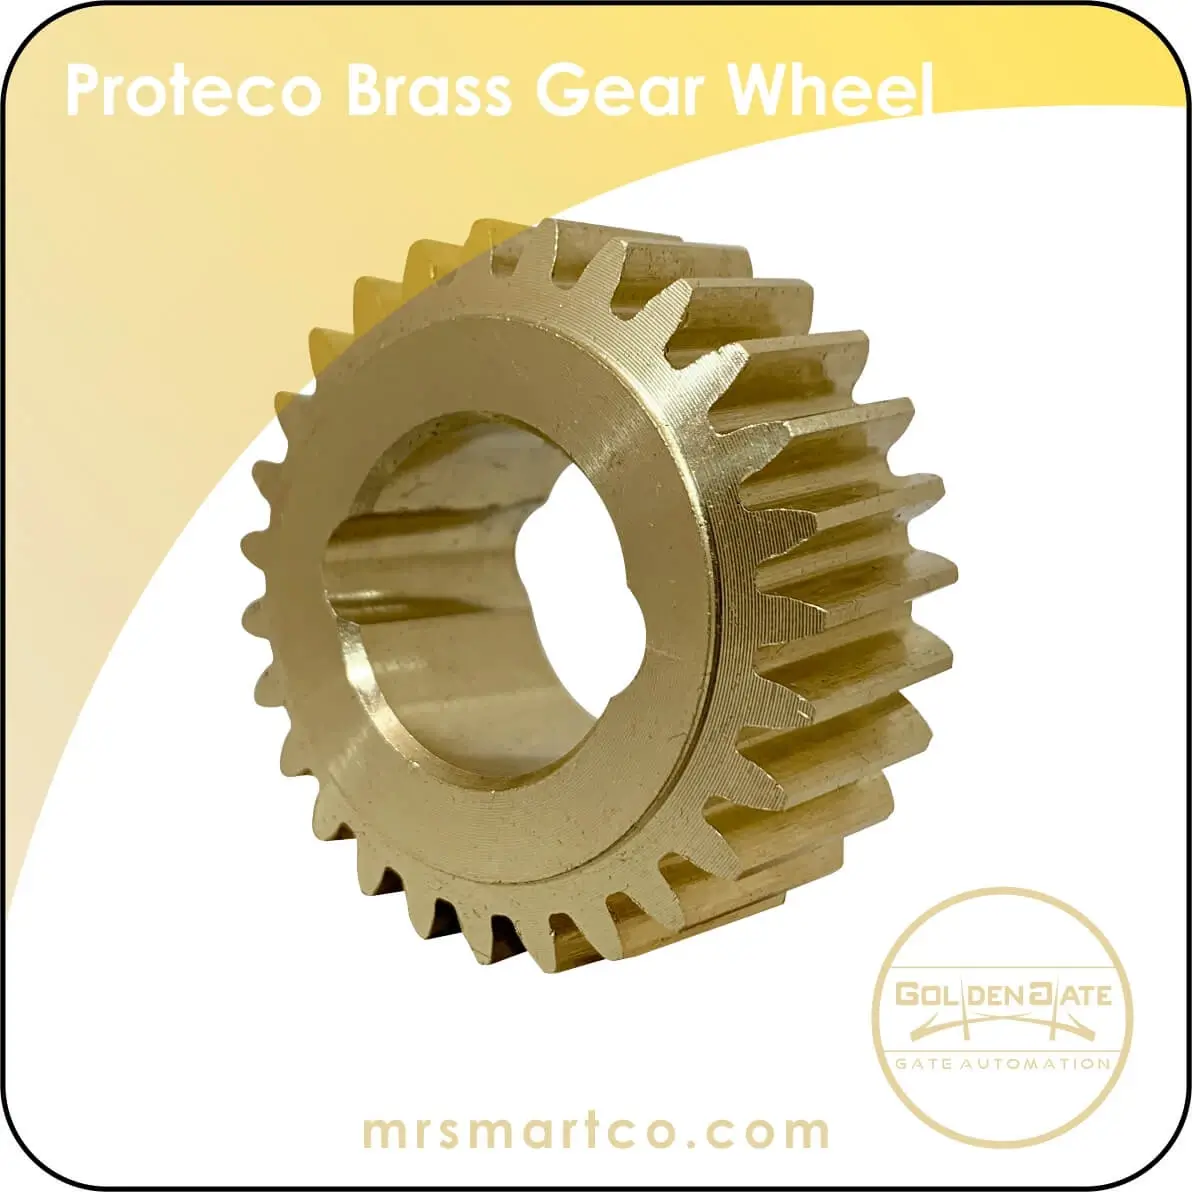 Proteco Brass Gear Wheel